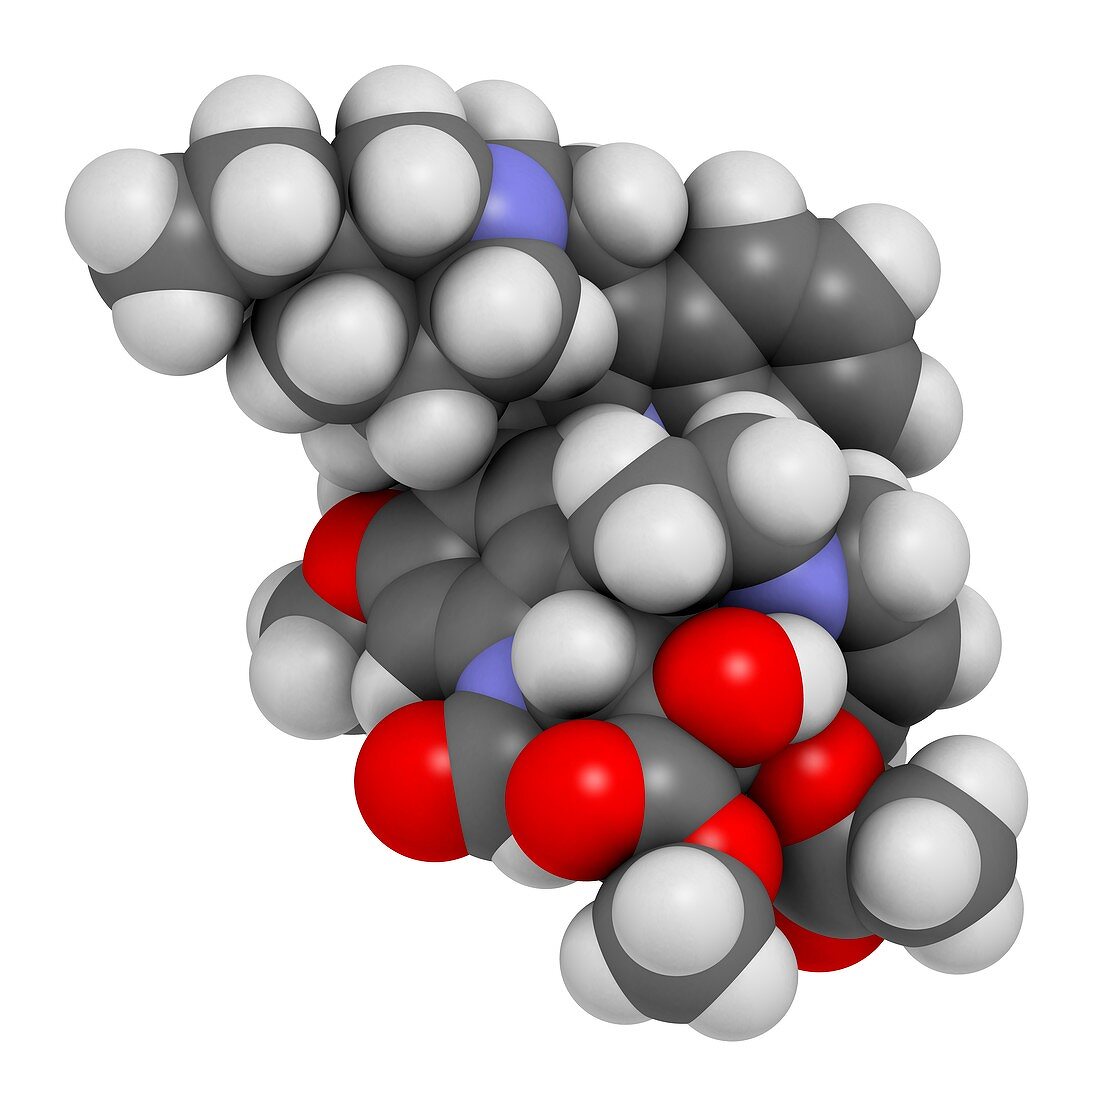 Vincrinstine cancer drug molecule